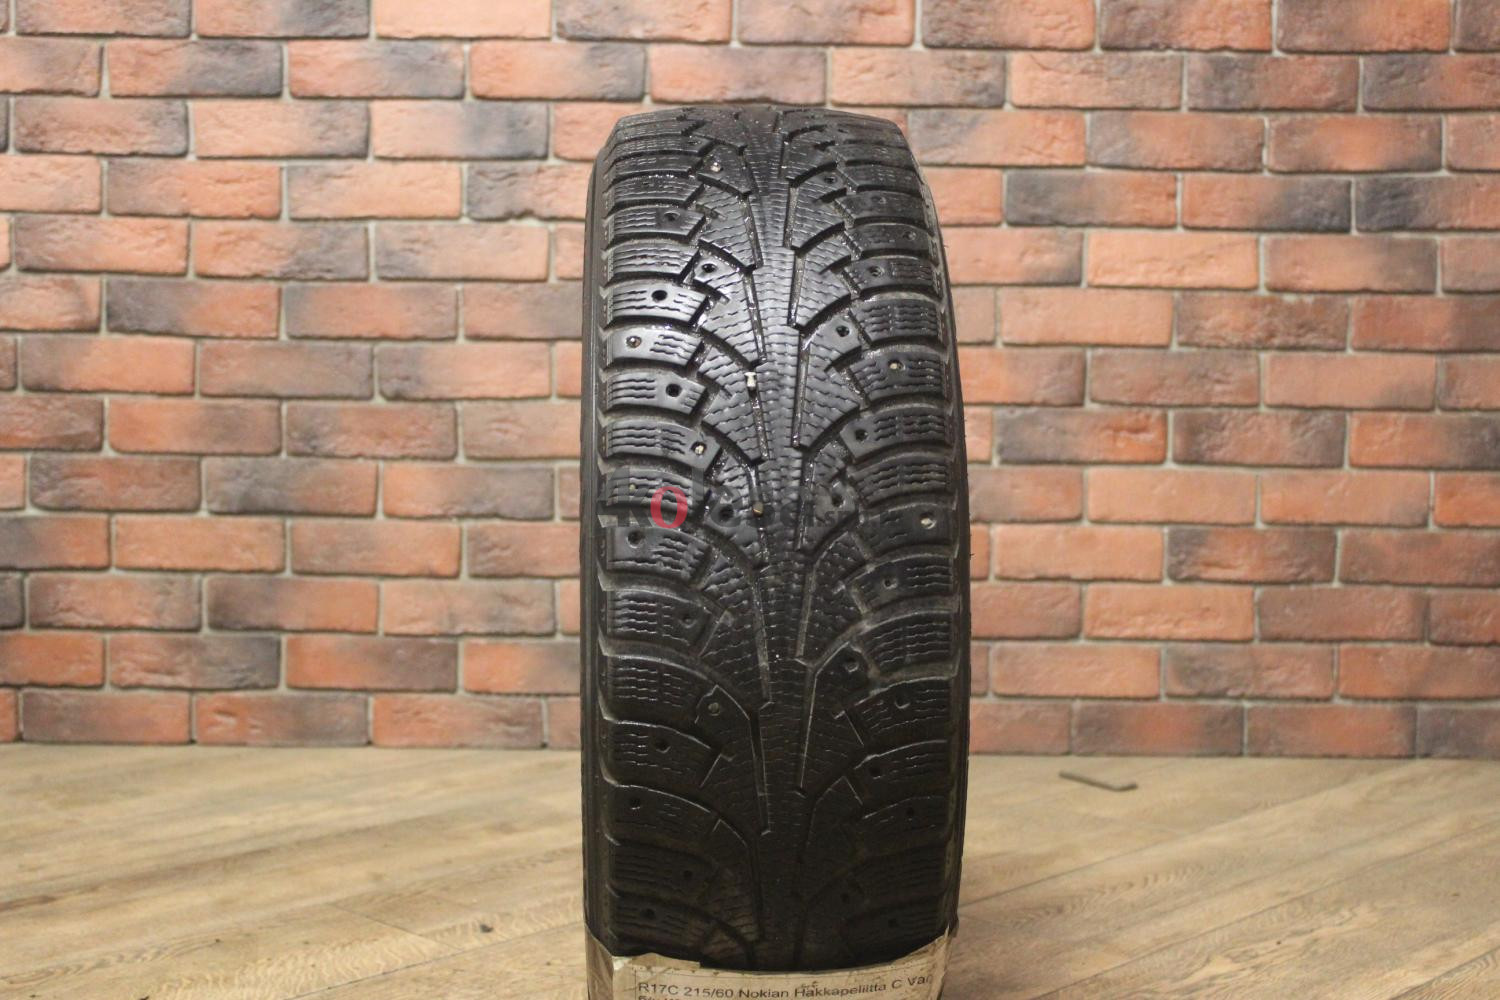 Зимние шипованные шины R17C 215/60 Nokian Tyres Hakkapeliitta C Van бу (6-7 мм.) остаток шипов 0-25%